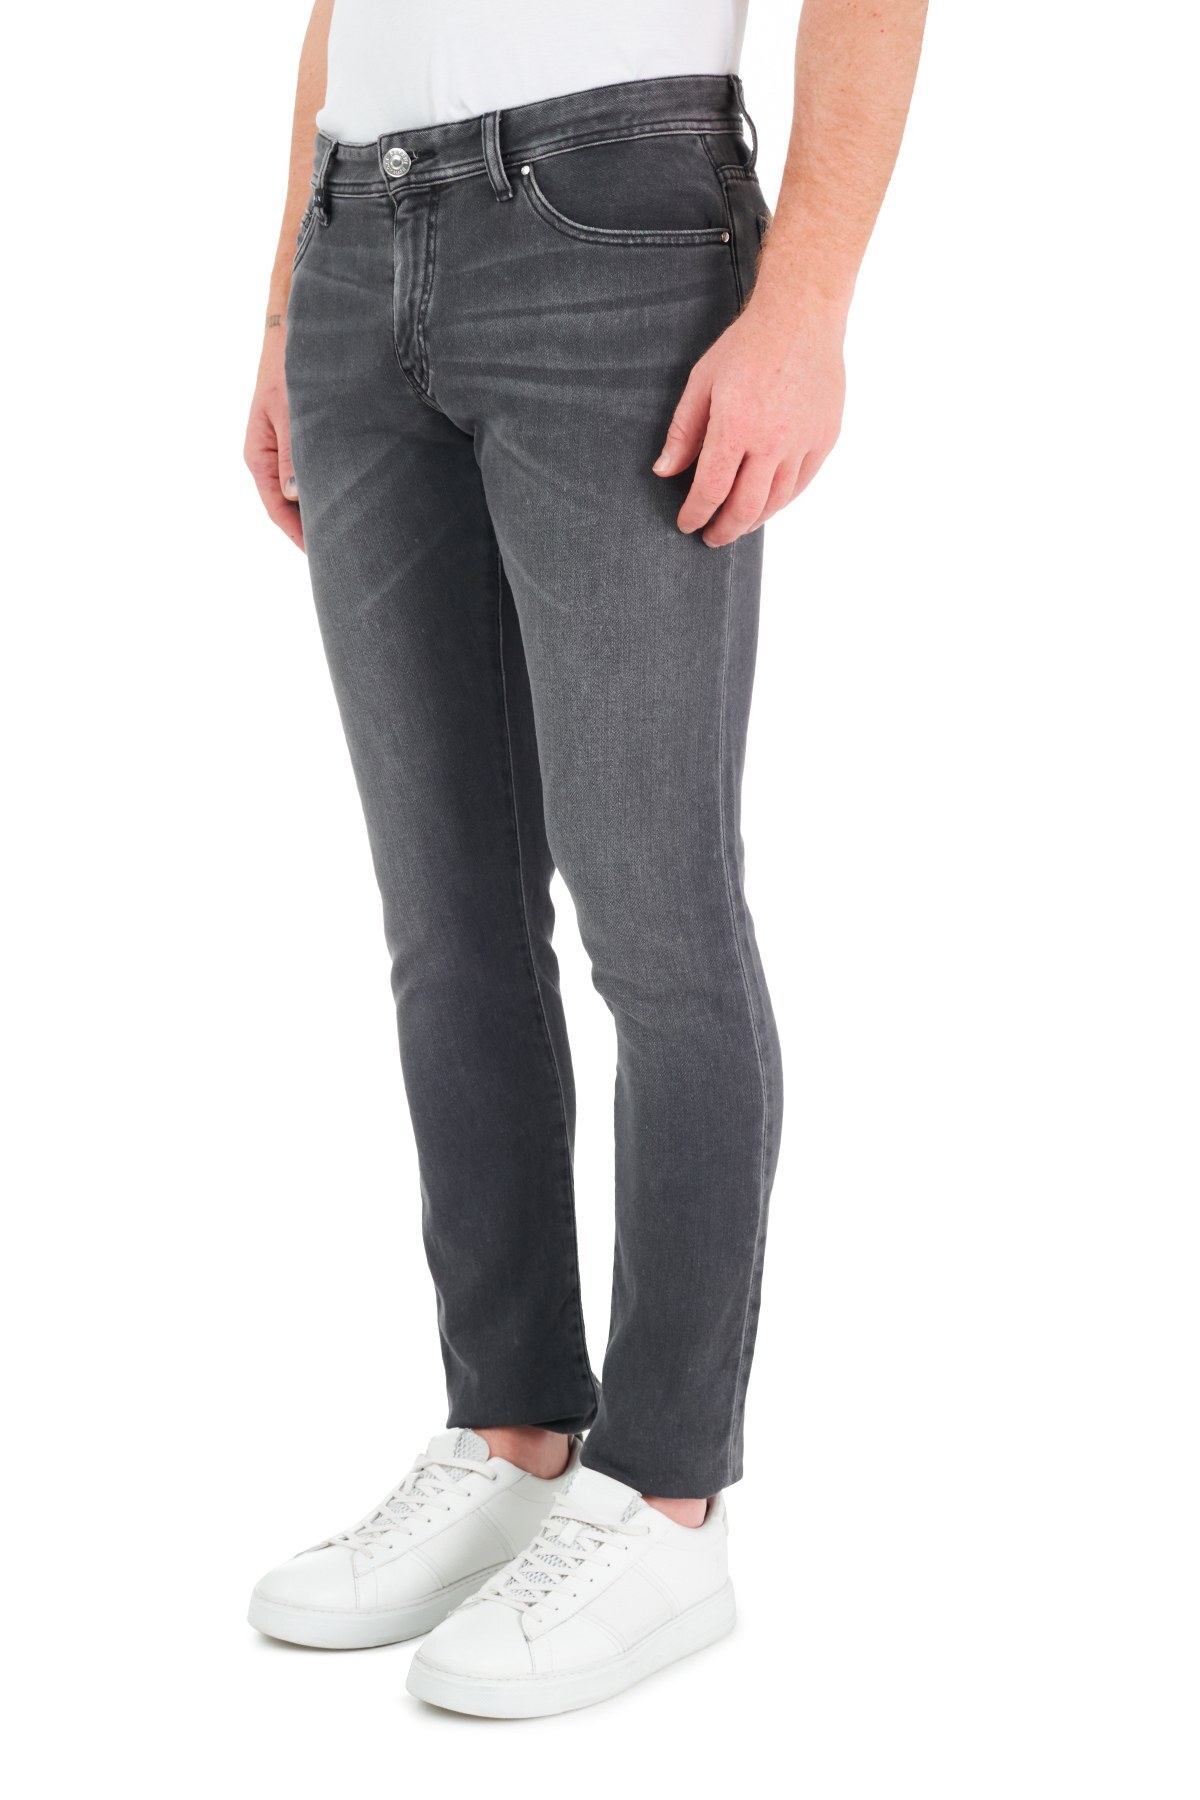 Armani Exchange Pamuklu Slim Fit J14 Jeans Erkek Kot Pantolon 3KZJ14 Z5QMZ 0903 GRİ